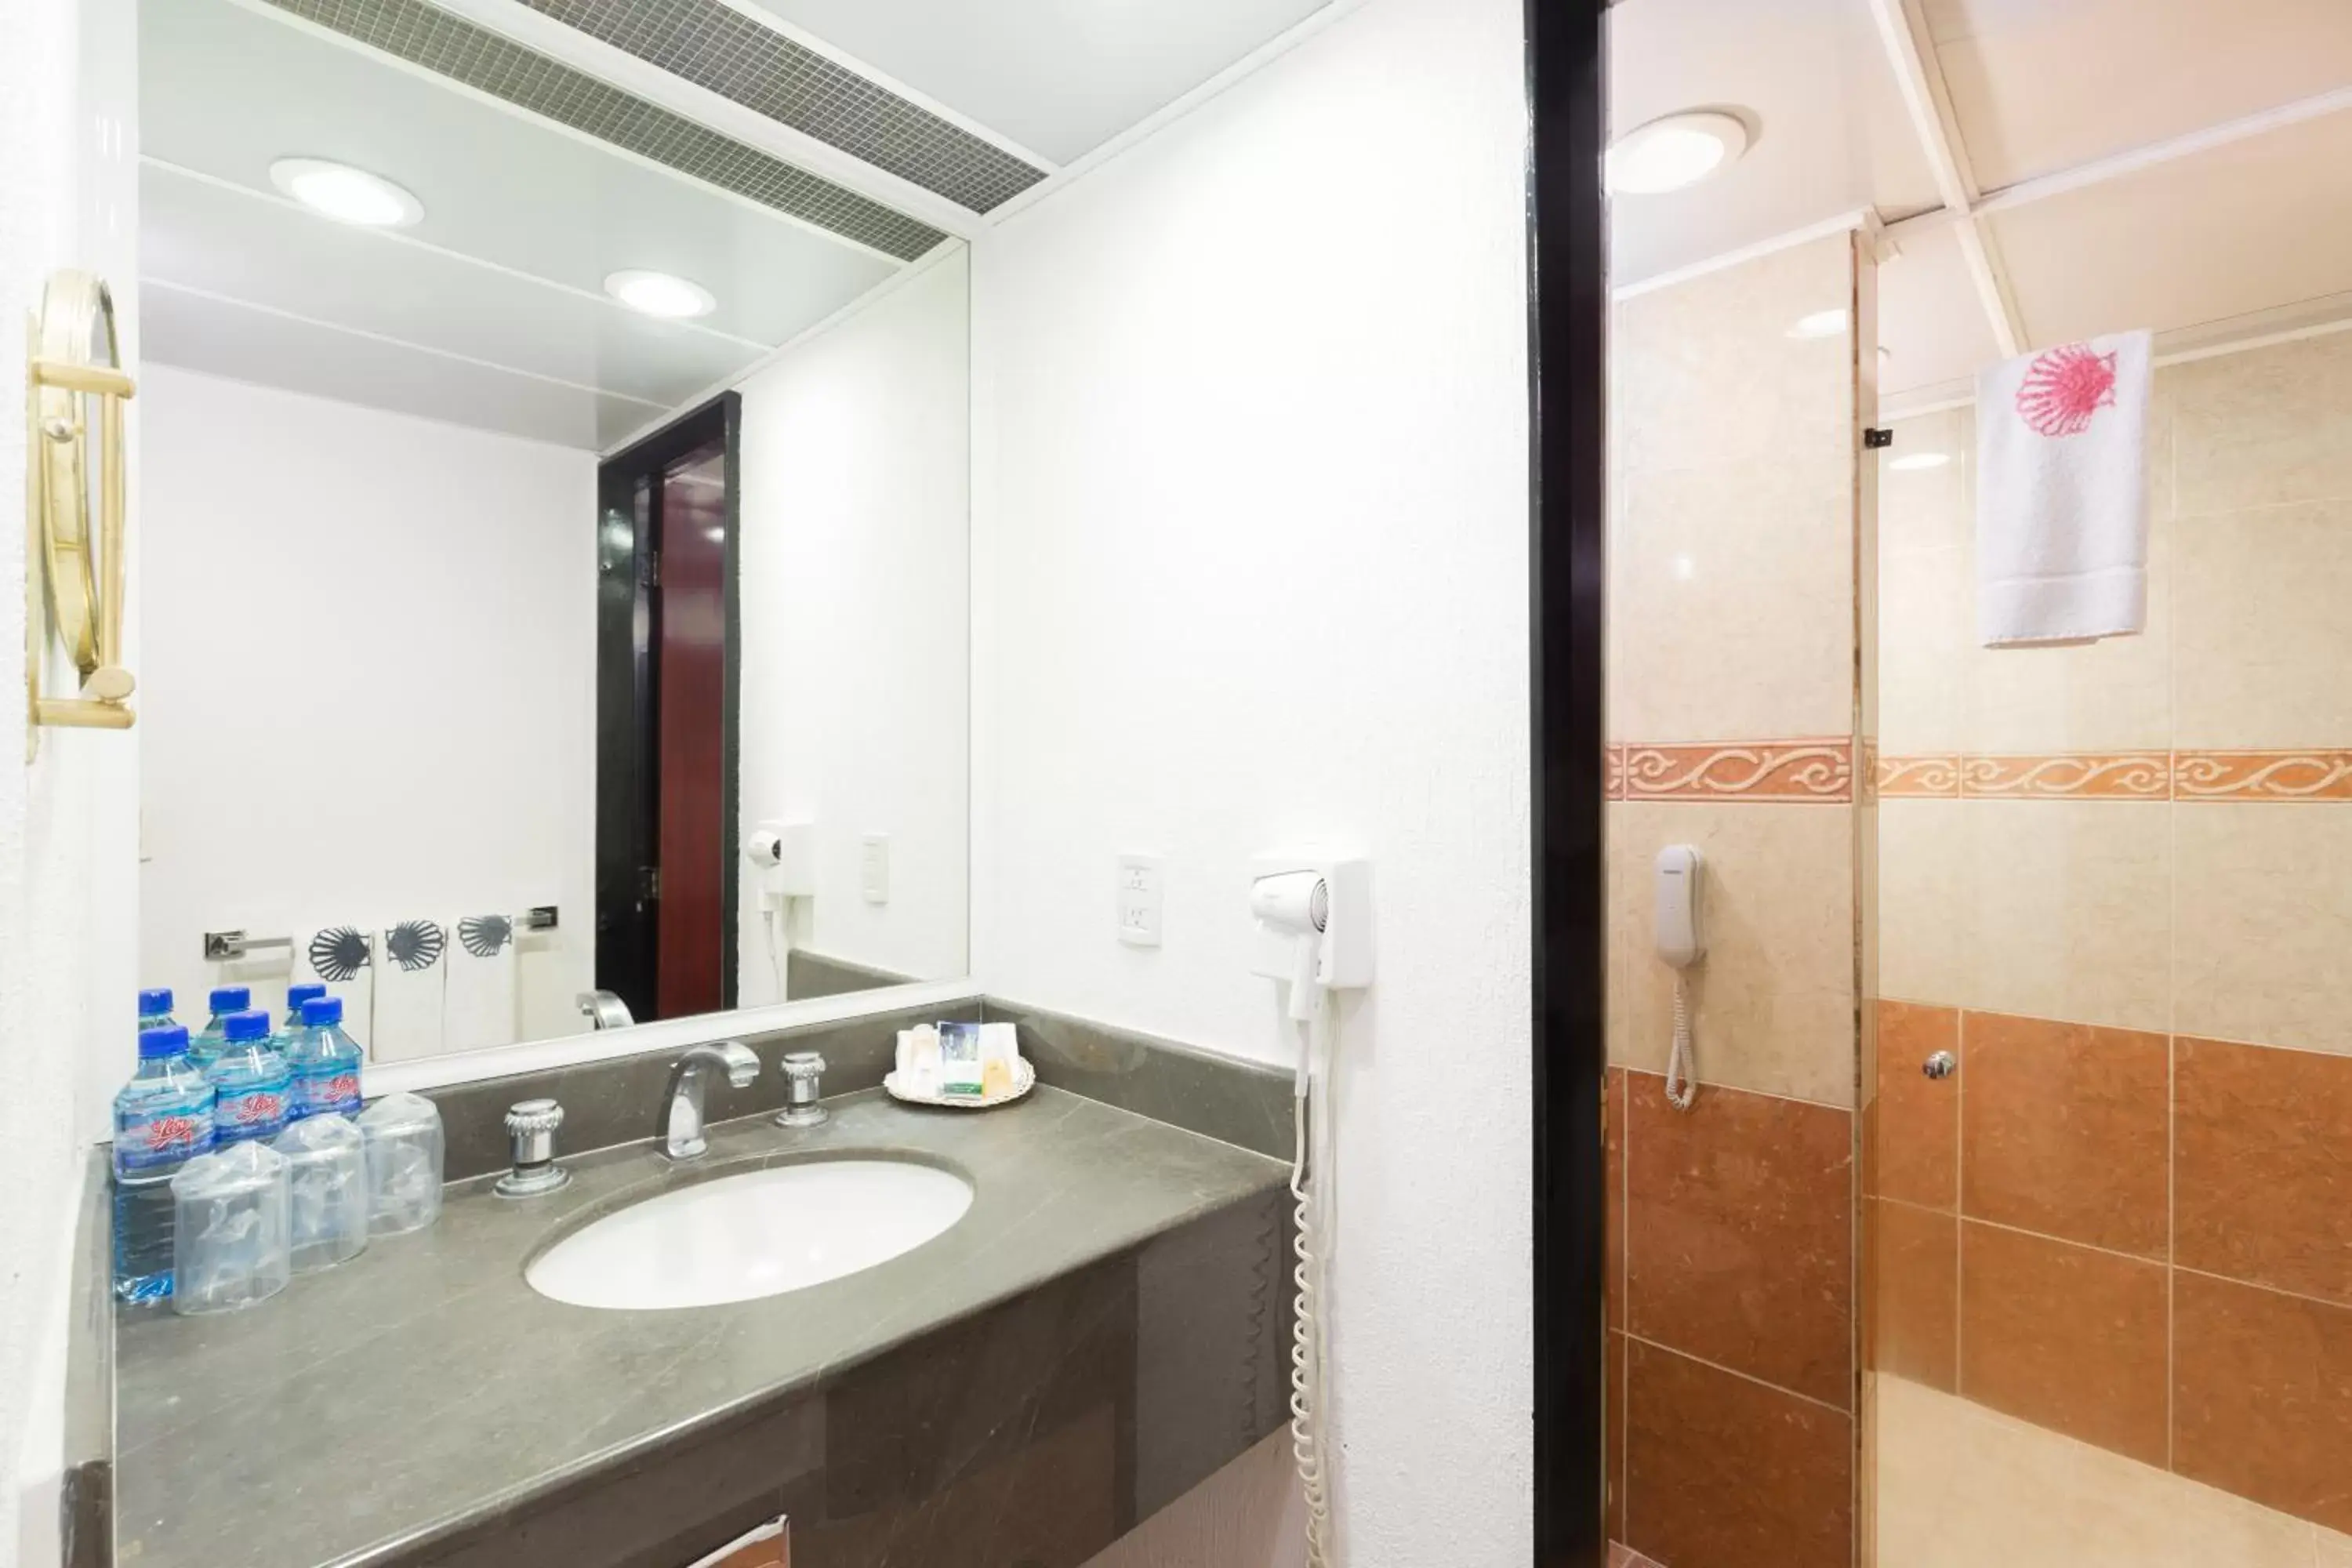 Bathroom in Hotel Estoril